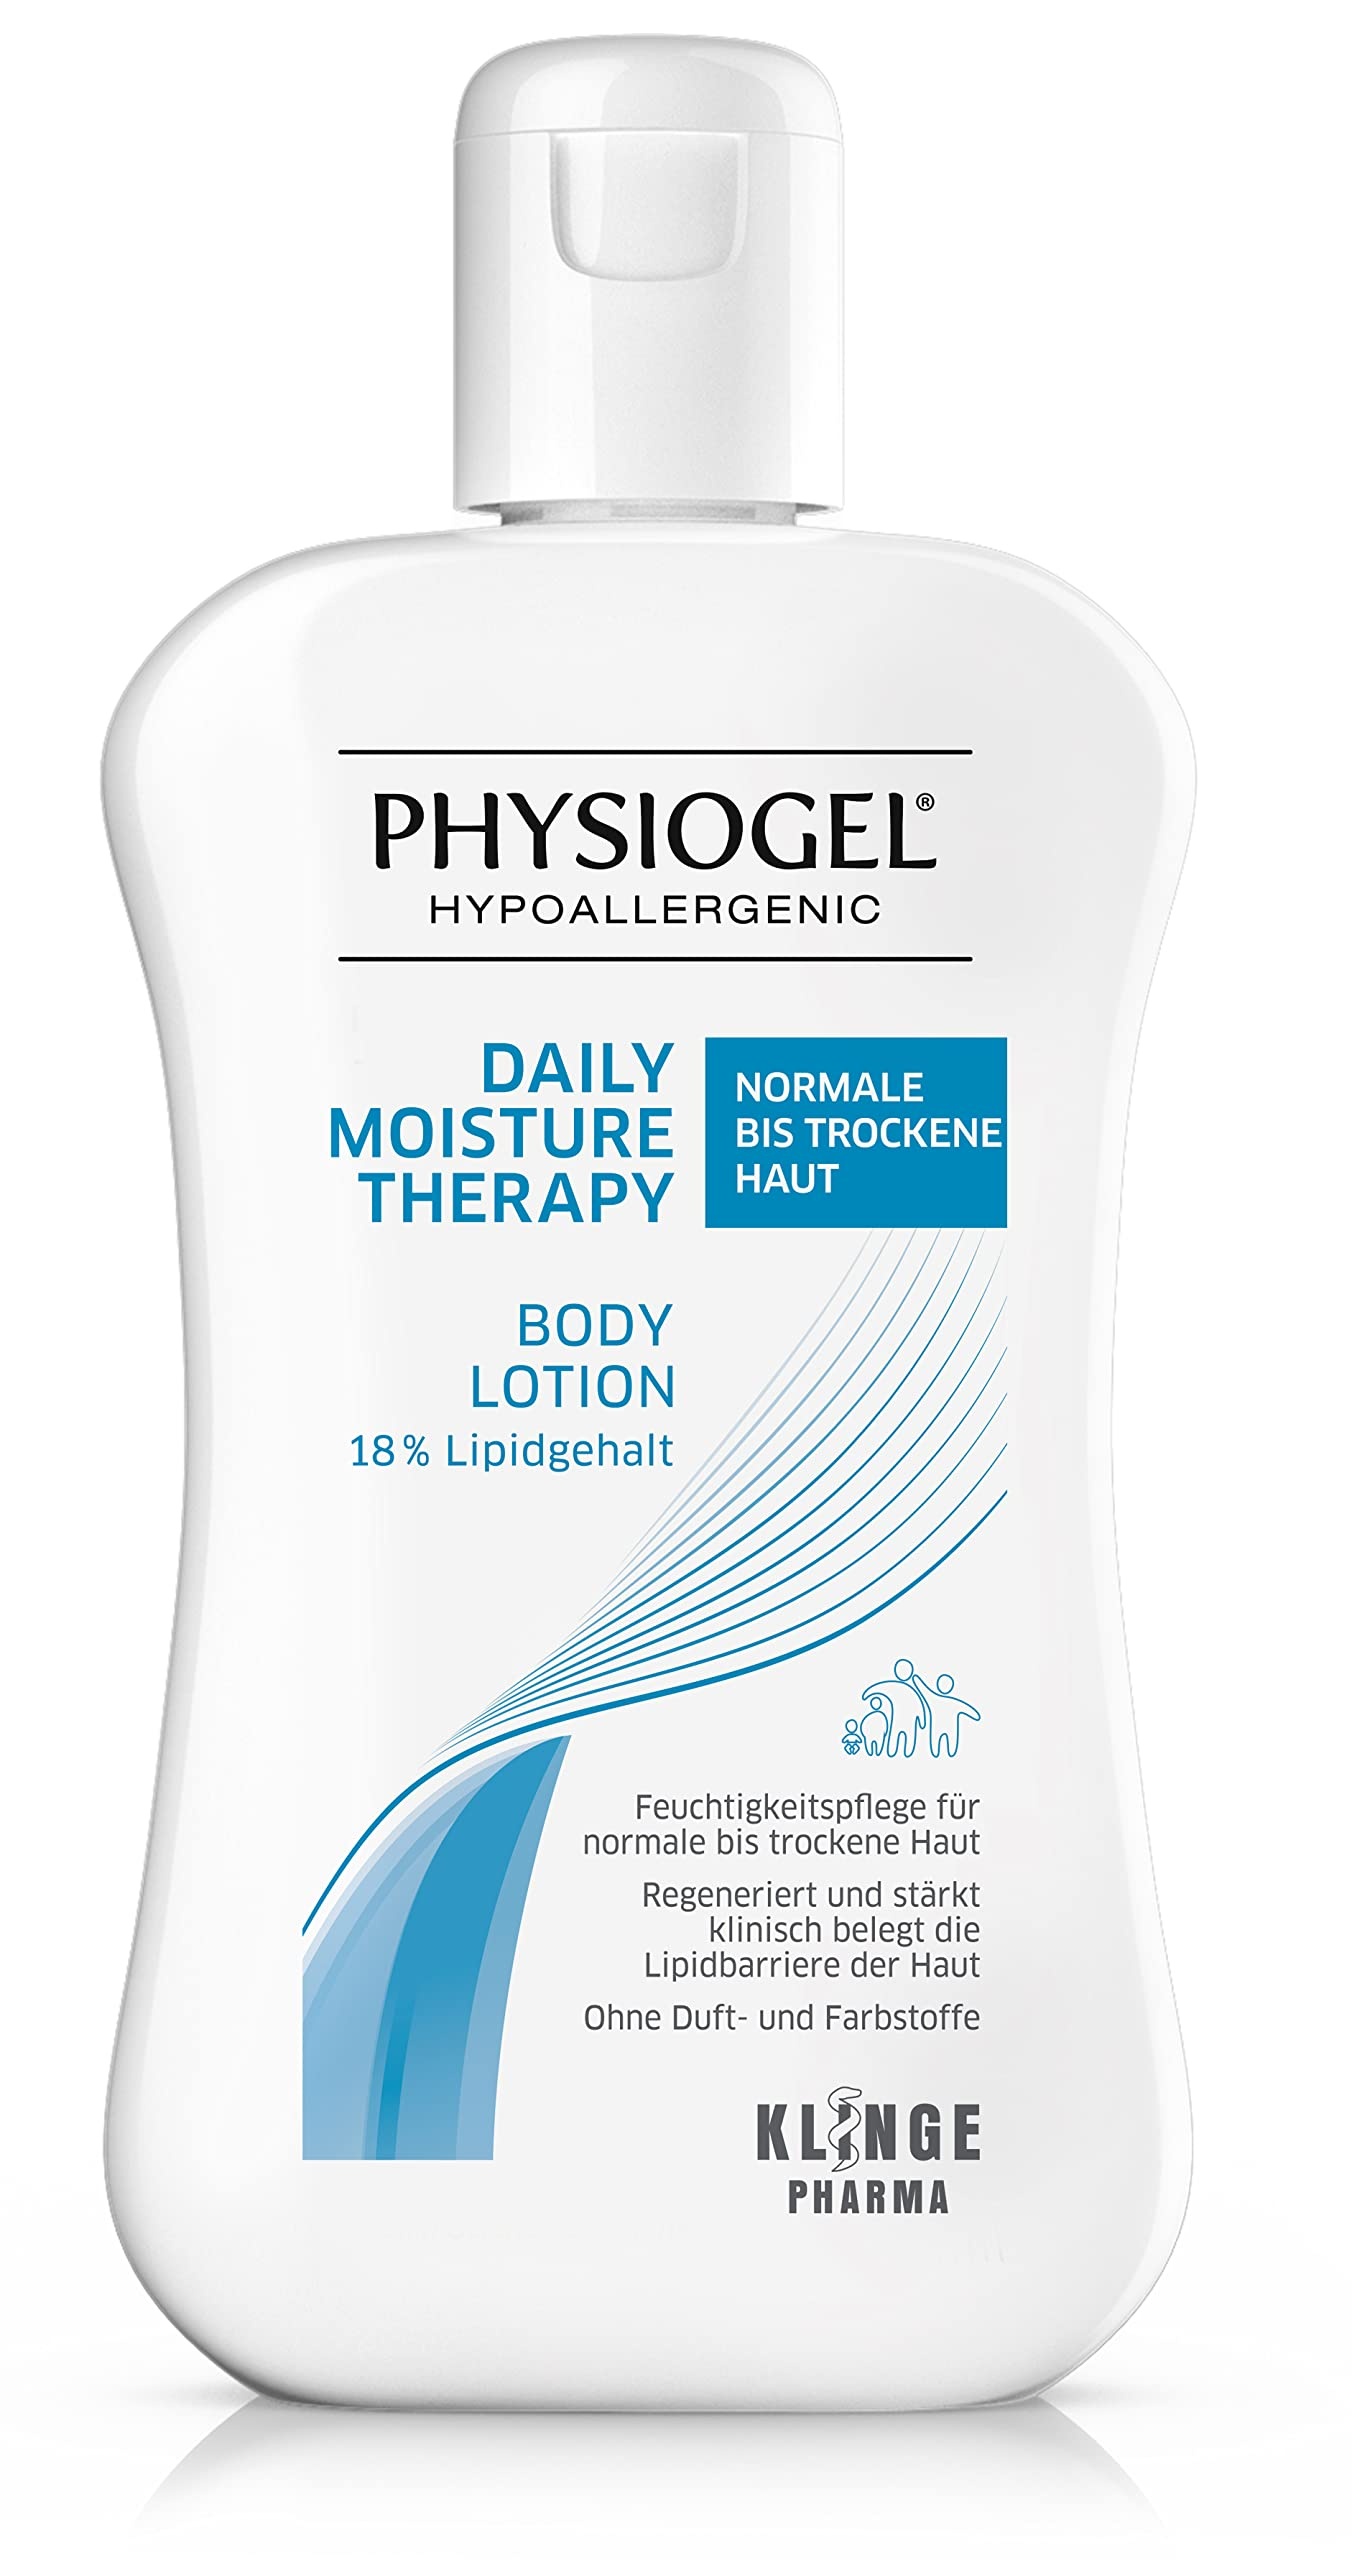 PHYSIOGEL Daily Moisture Therapy Body Lotion 200 ml – feuchtigkeitsspendende Körperlotion für trockene, spannende Haut – regeneriert und repariert die Haut